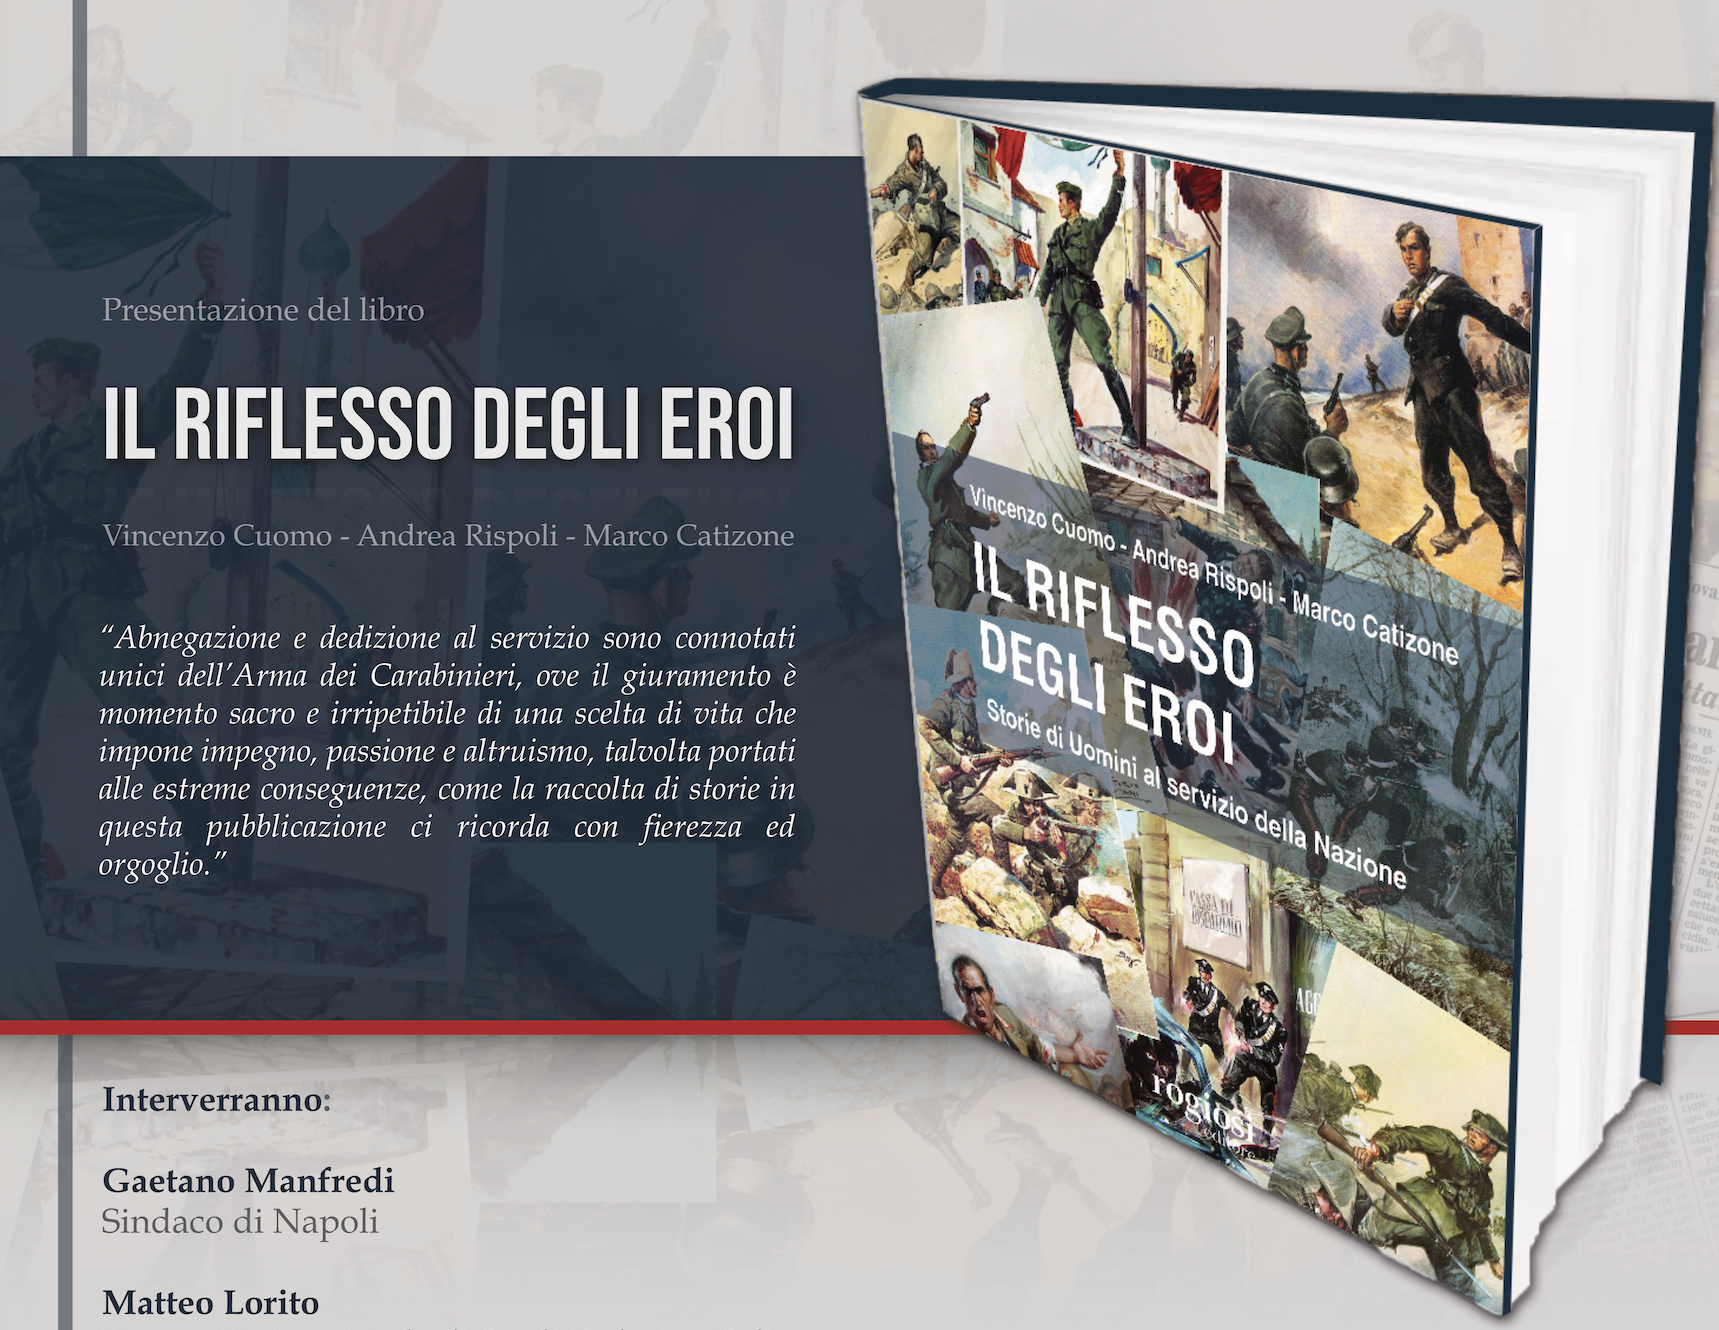 Il riflesso degli eroi, un libro sulla storia degli eroi dei carabinieri nella storia d’Italia. Un modello per le future generazioni